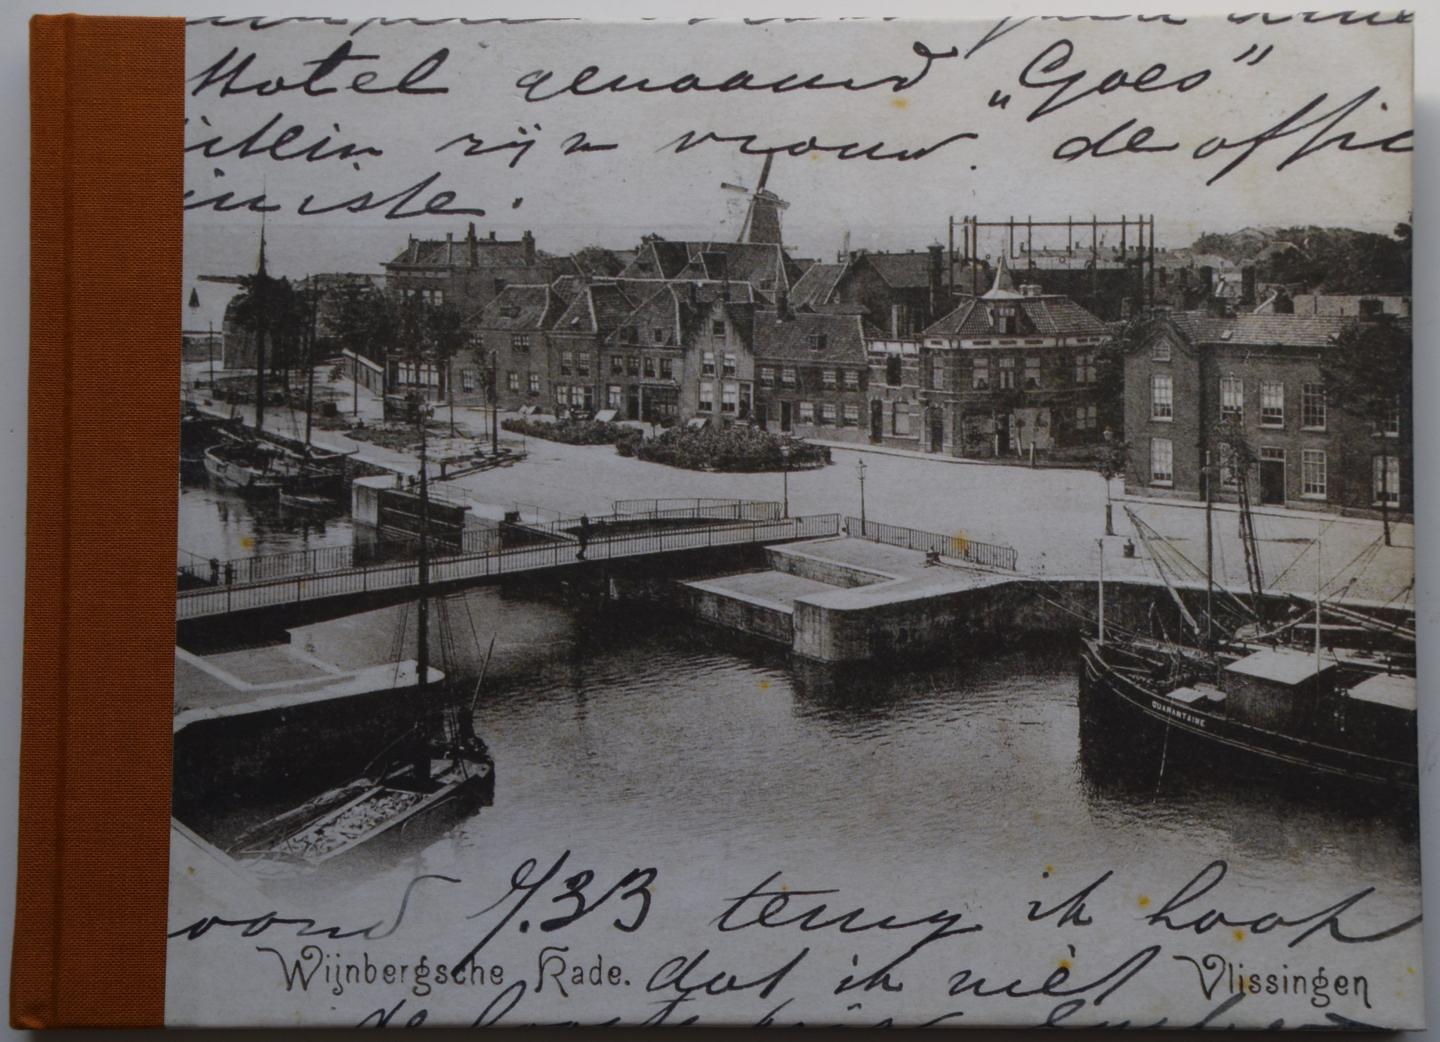 Rozenburg, Roel - Groeten uit Vlissingen, een eeuw verstreken.